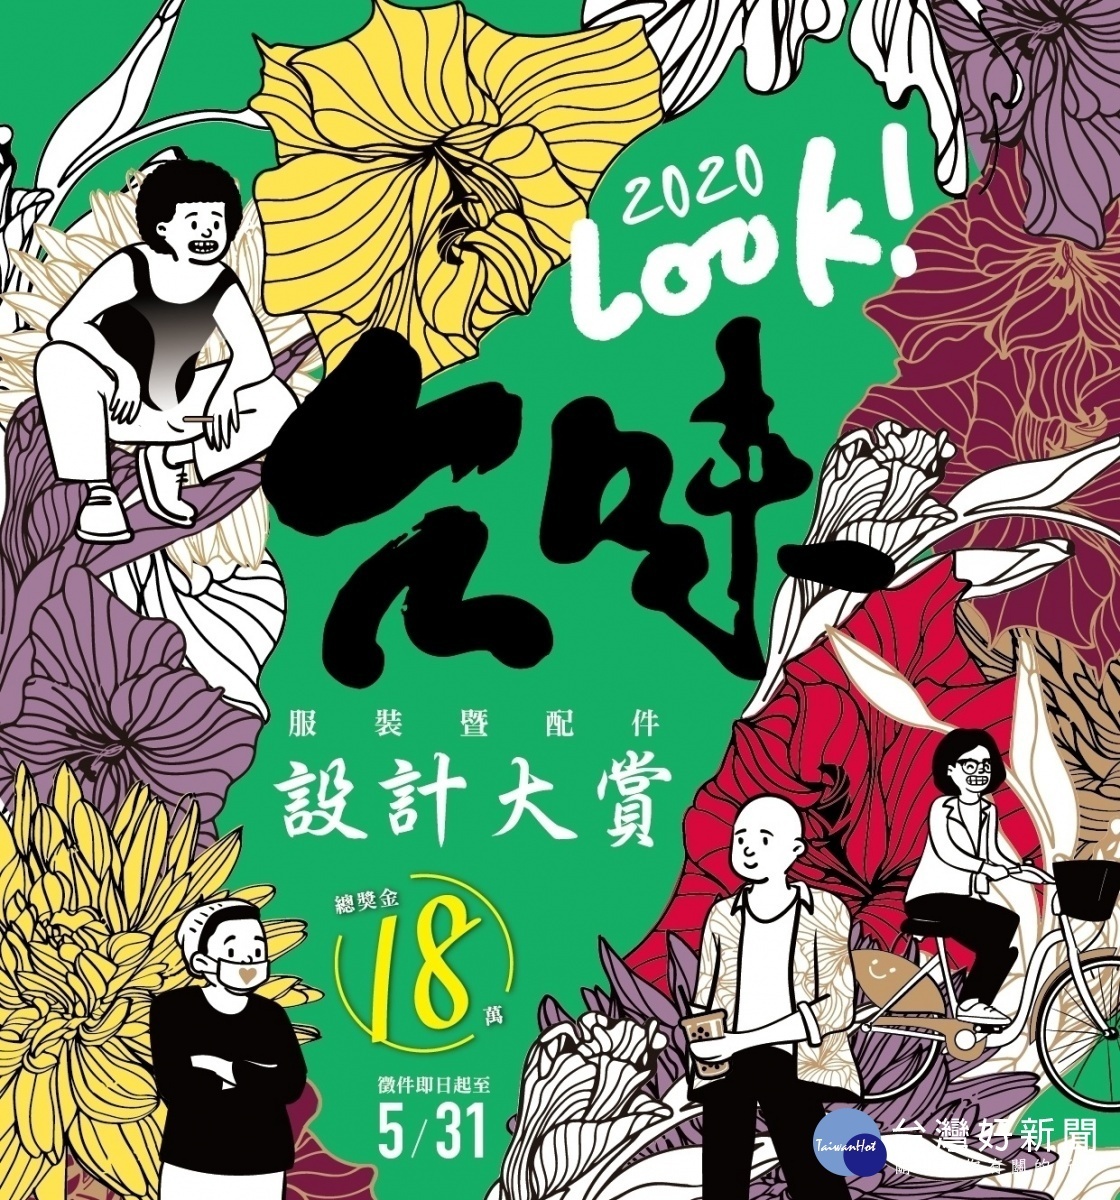 勞動部辦「2020 Look台味服裝暨配件設計大賞」徵件，號召各領域設計師一起定義台灣人形象。